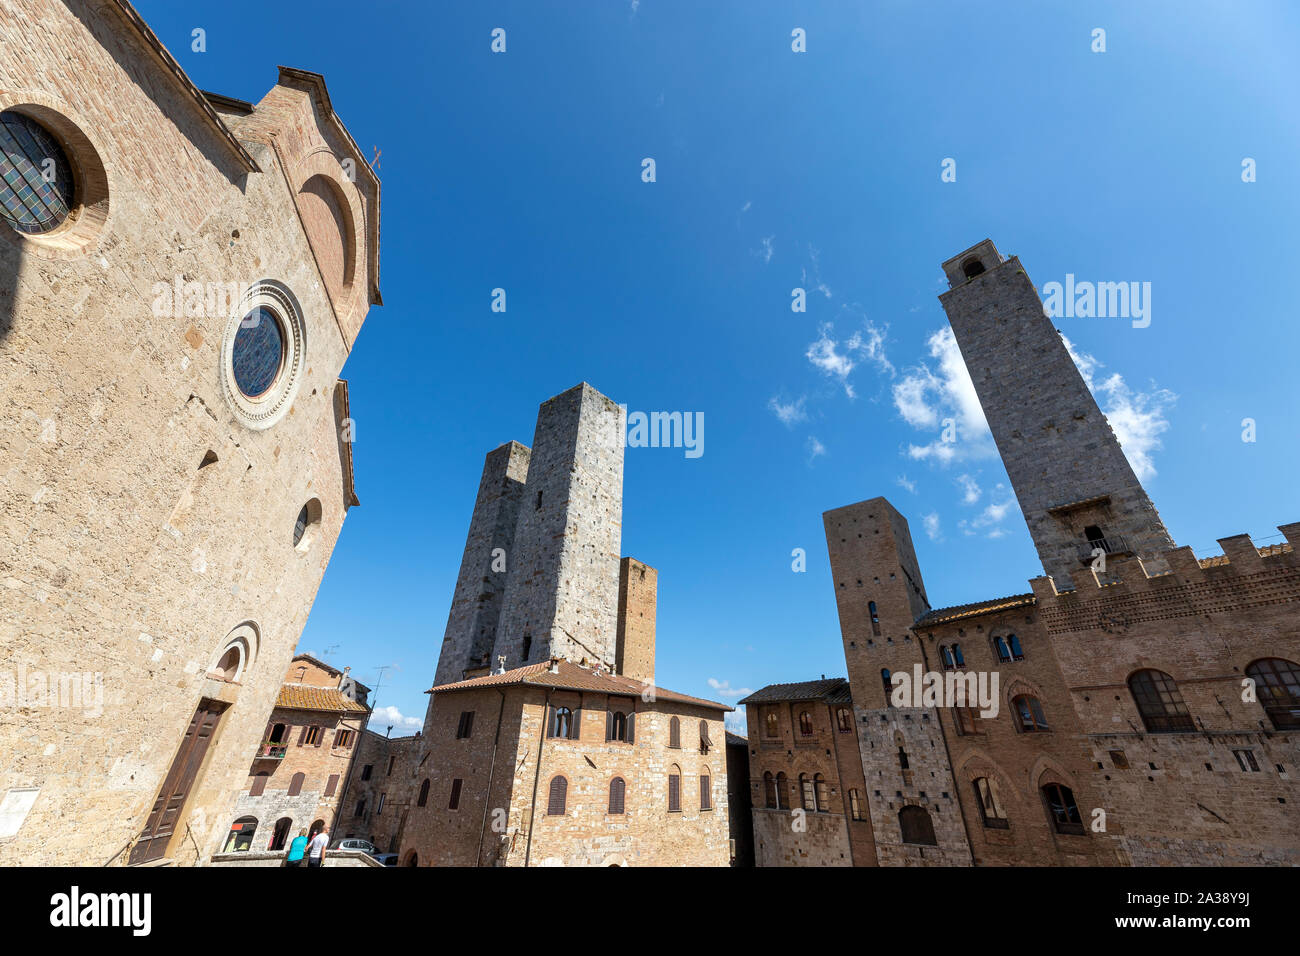 Centre historique de San Gimignano avec l'architecture médiévale caractéristique de son centre historique a été déclaré site du patrimoine mondial de l'UNESCO Banque D'Images